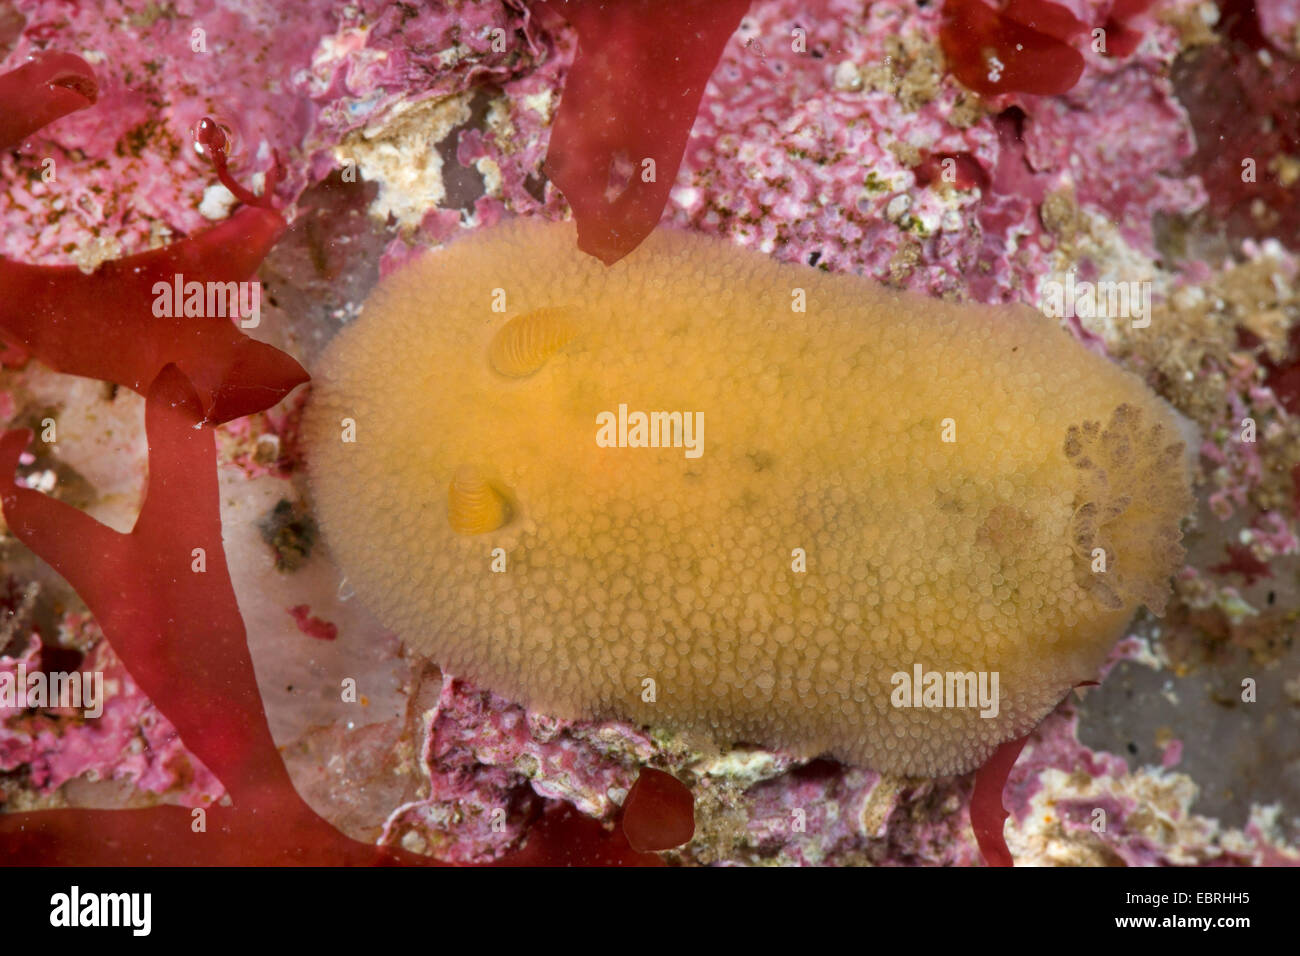 sea lemon (Doris pseudoargus, Archidoris pseudoargus, Archidoris tuberculata) Stock Photo